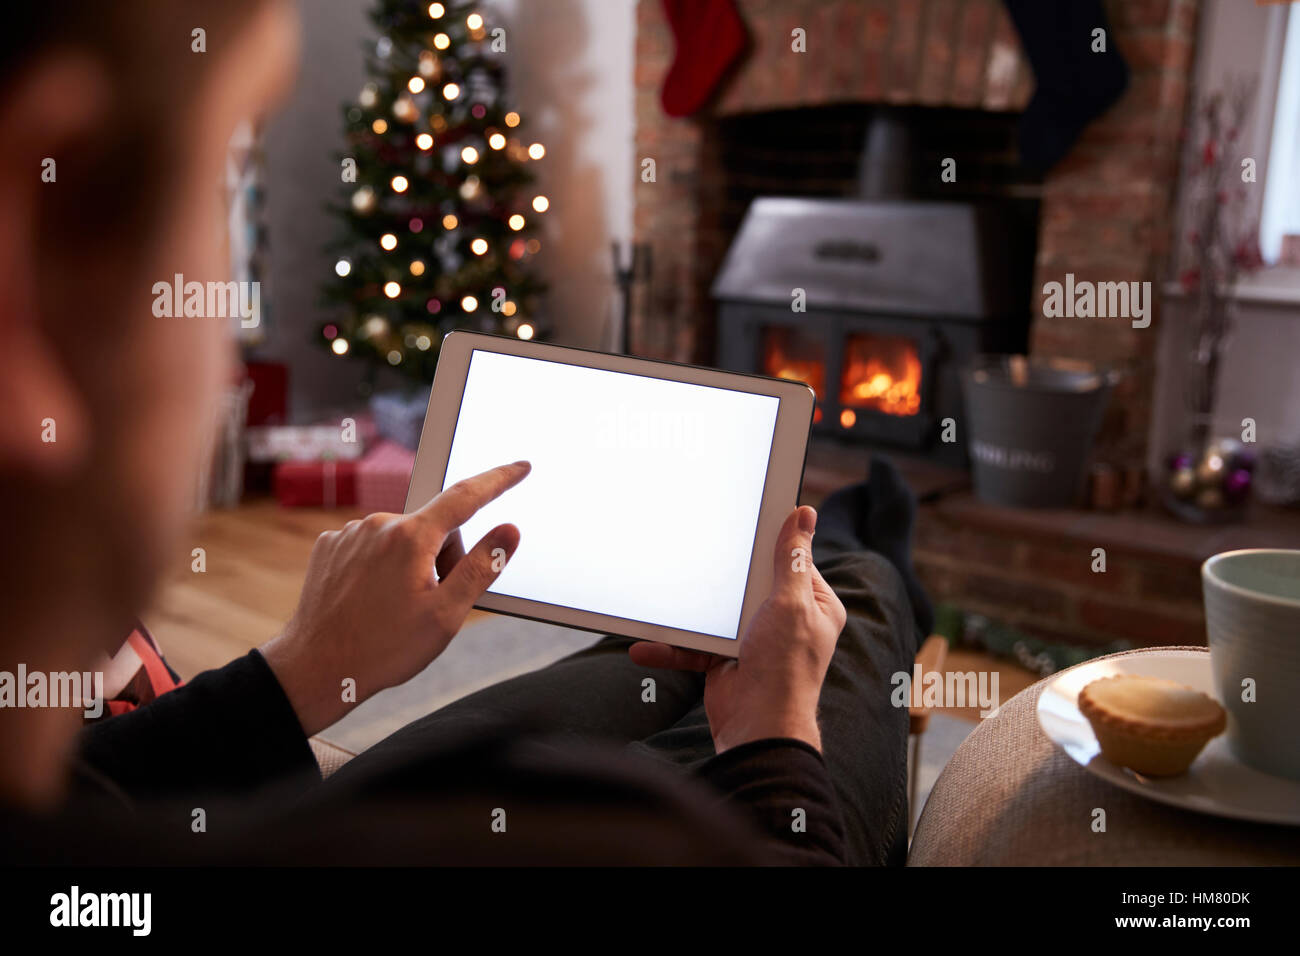 Mann mit Digital-Tablette In Zimmer dekoriert für Weihnachten Stockfoto